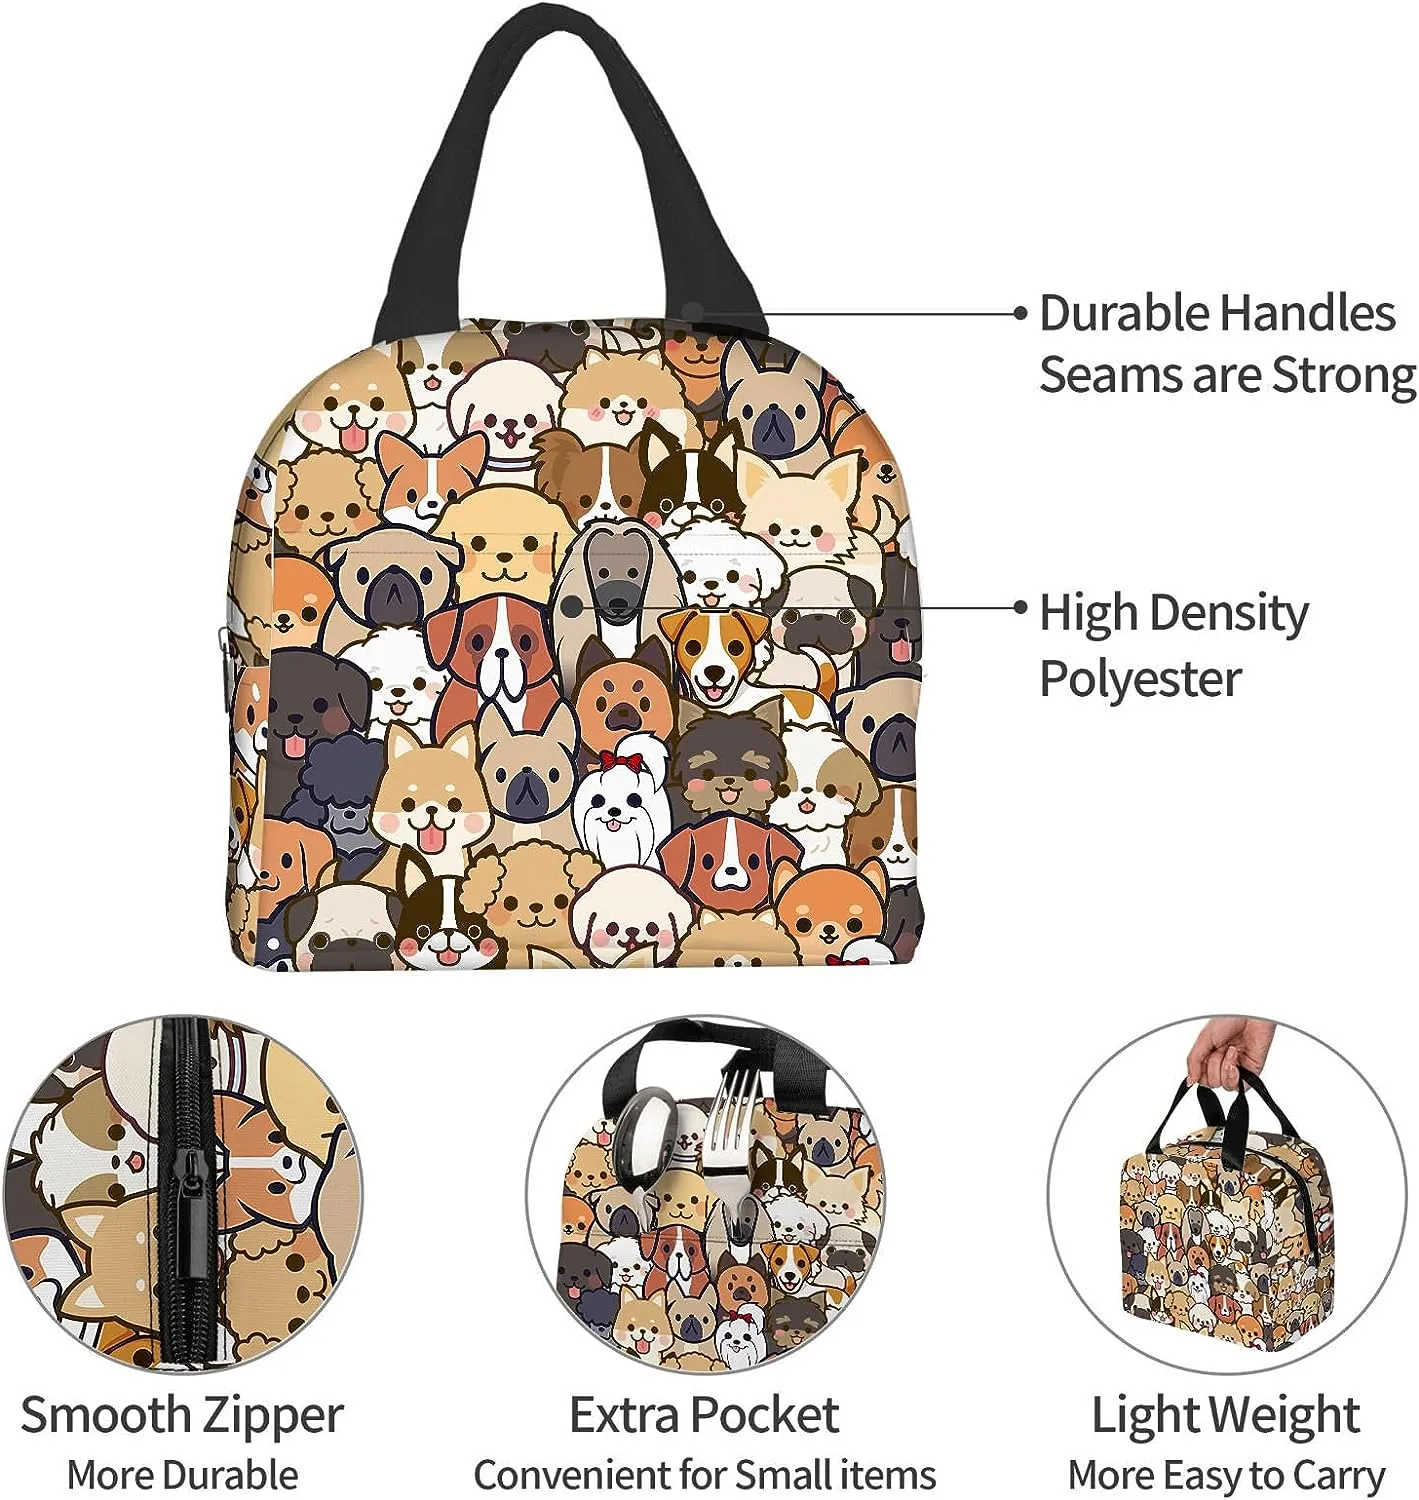 Sevimli köpek öğle yemeği çantası kawaii köpek öğle yemeği kutusu hayvan baskı kompakt tote çanta yeniden kullanılabilir çanta kadınlar için piknik plaj ofis çalışması